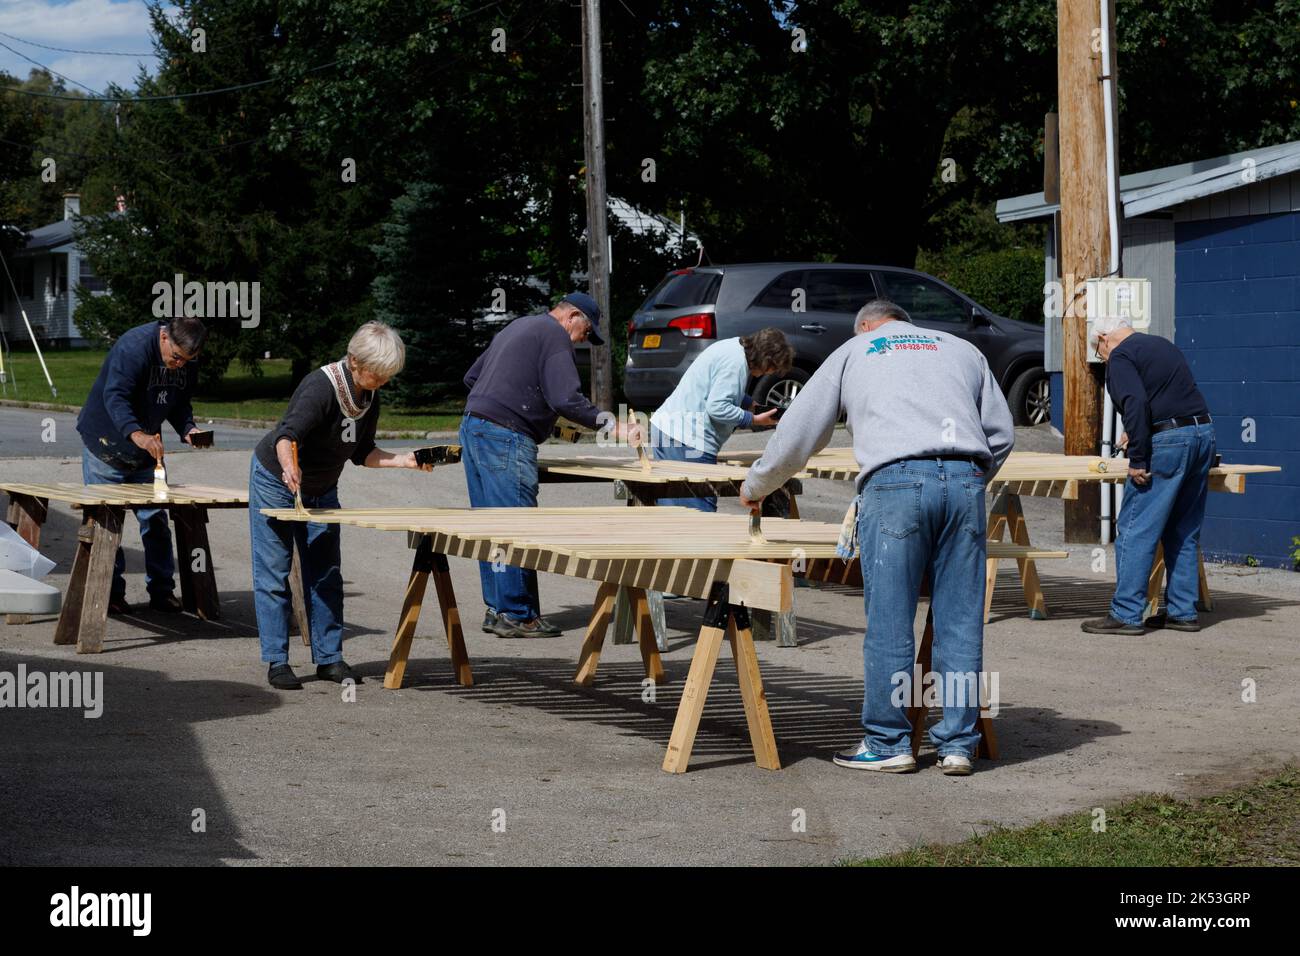 St. Johnsville, Montgomery County, New York: Freiwillige malen Holzlatten während der Reparatur der Tribüne auf dem Gemeinschaftsballfeld. Stockfoto